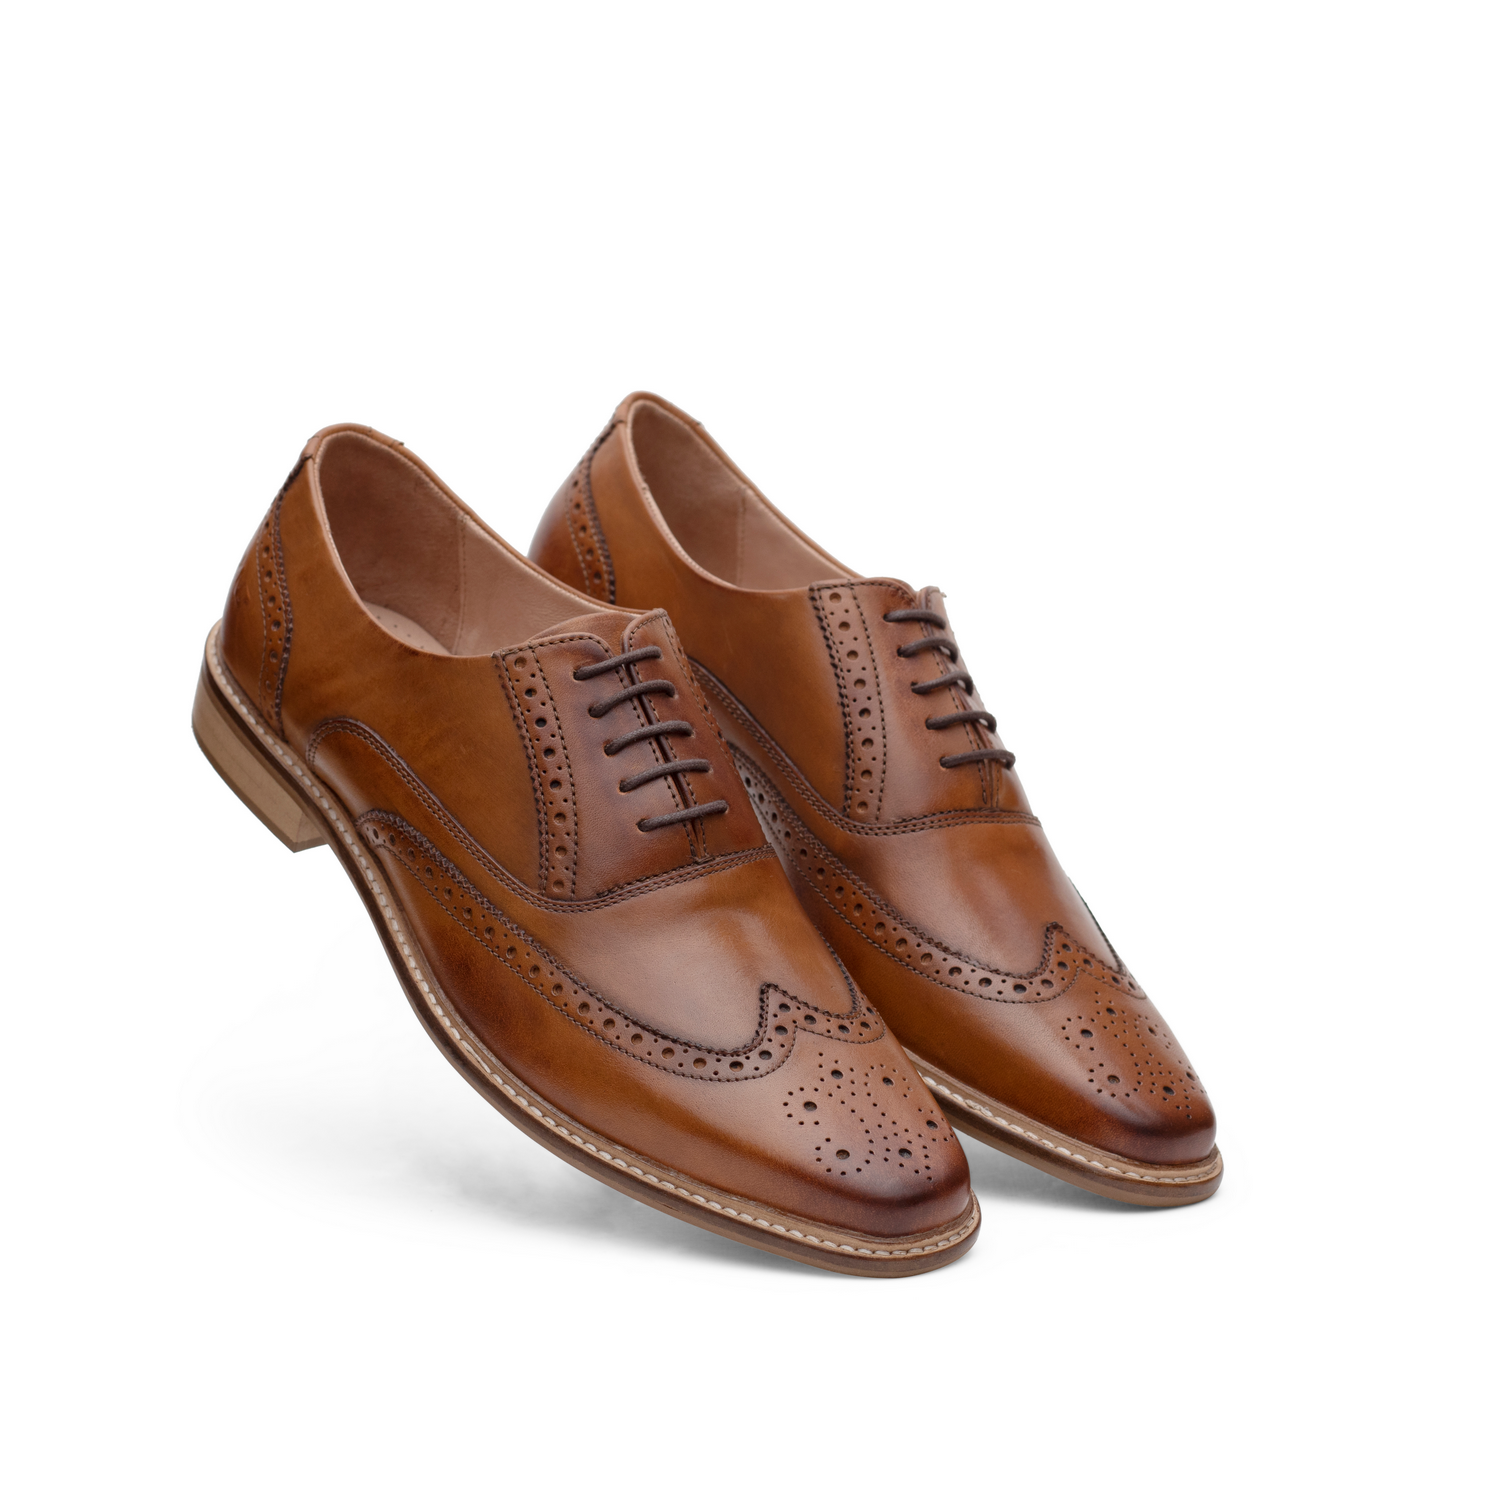 men's formal shoes tan colour